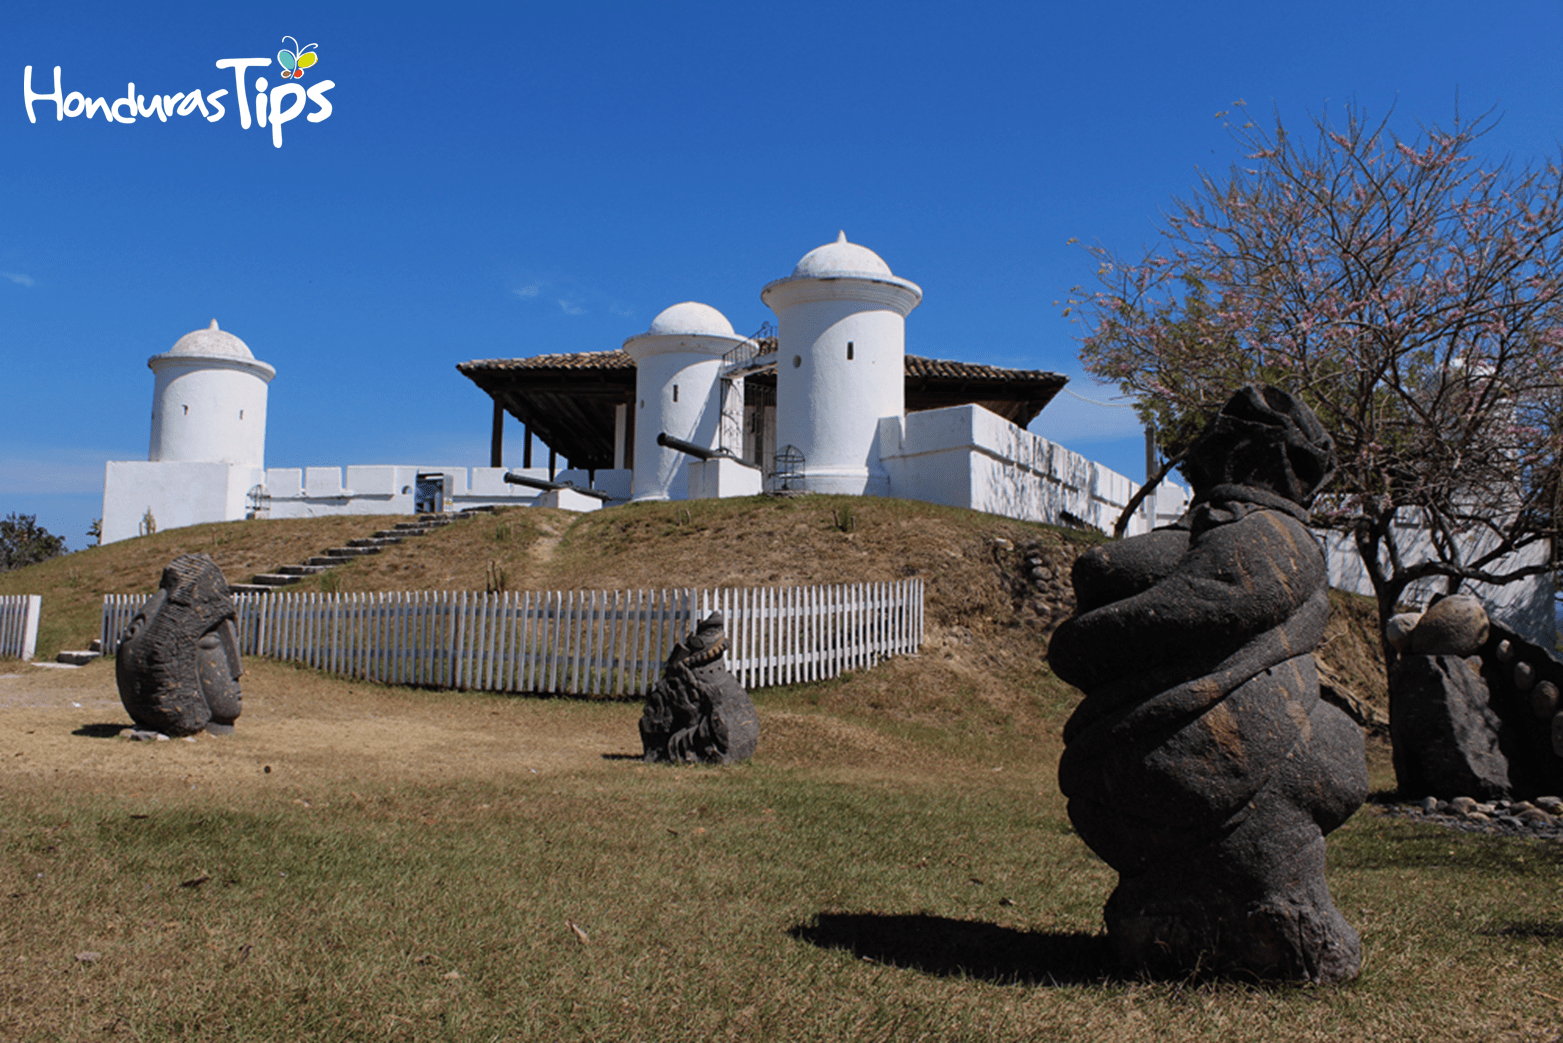 El fuerte de san Cristóbal es uno de los atractivos si va a Gracias, Lempira.